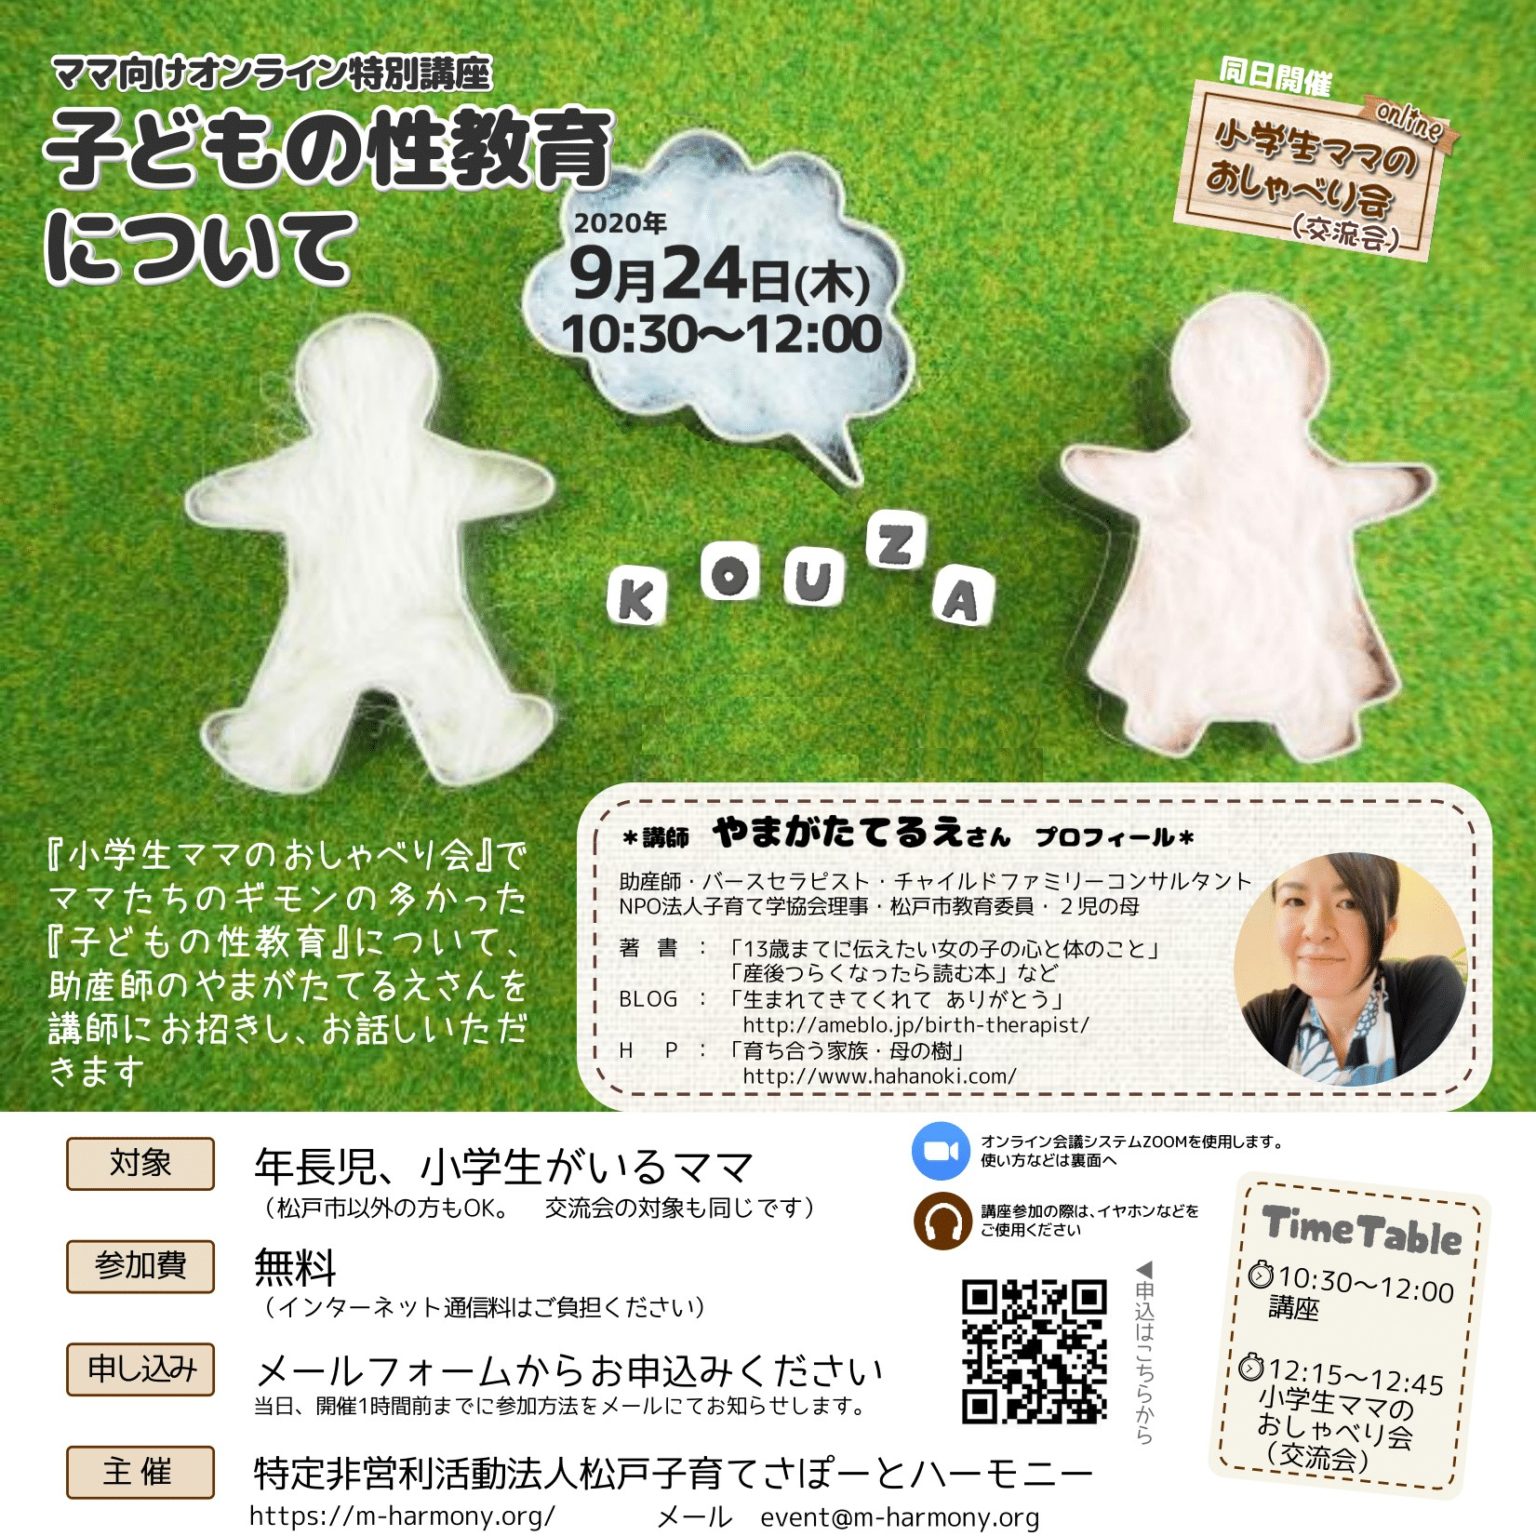 ママ向けオンライン特別講座『子どもの性教育について』